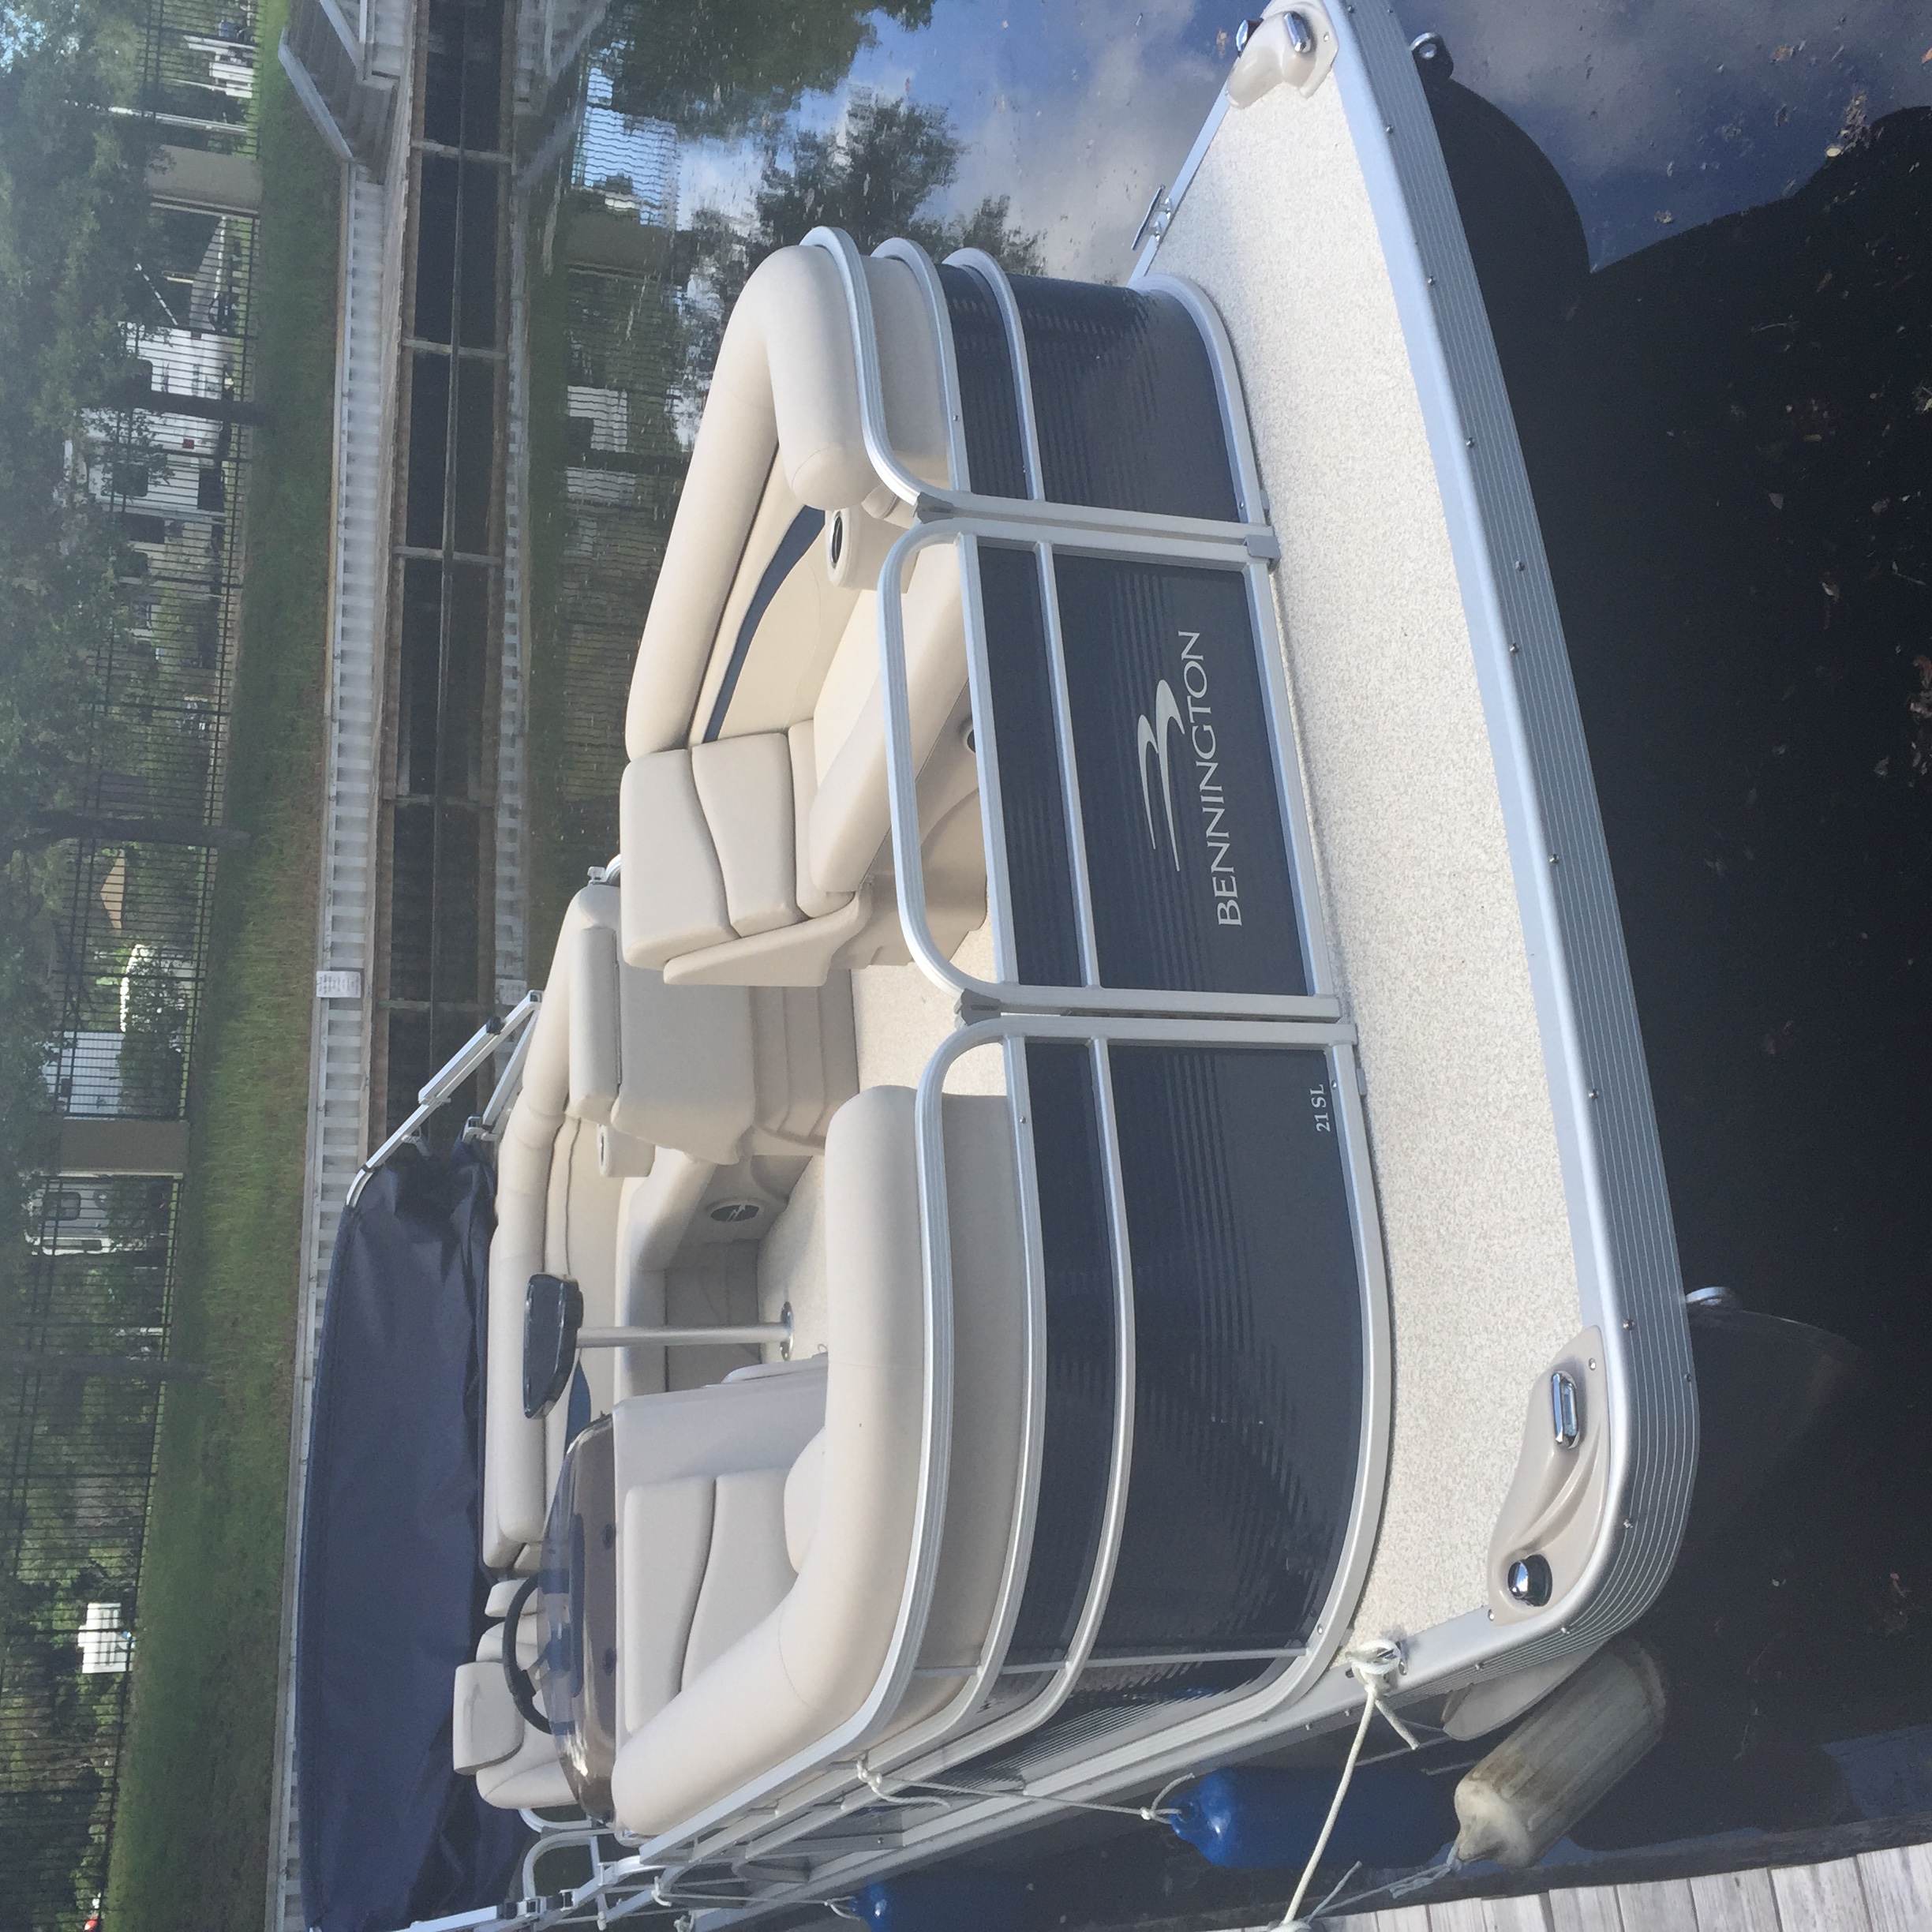 2017 Bennington SL21 Pontoon Boat for sale in Deer Island, FL - image 1 